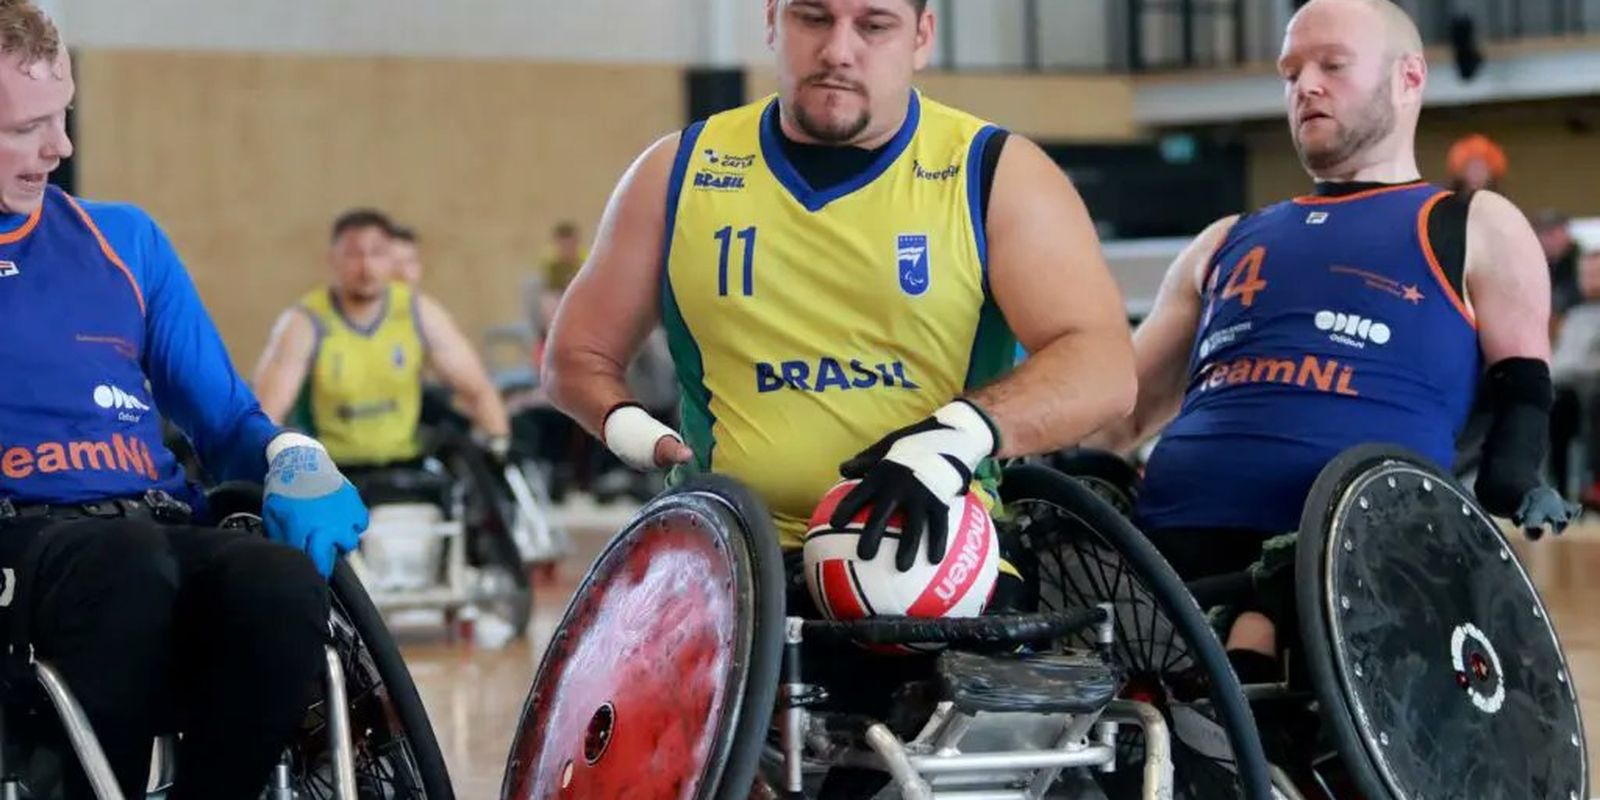 Brasil fica perto de vaga paralímpica no rúgbi em cadeira de rodas